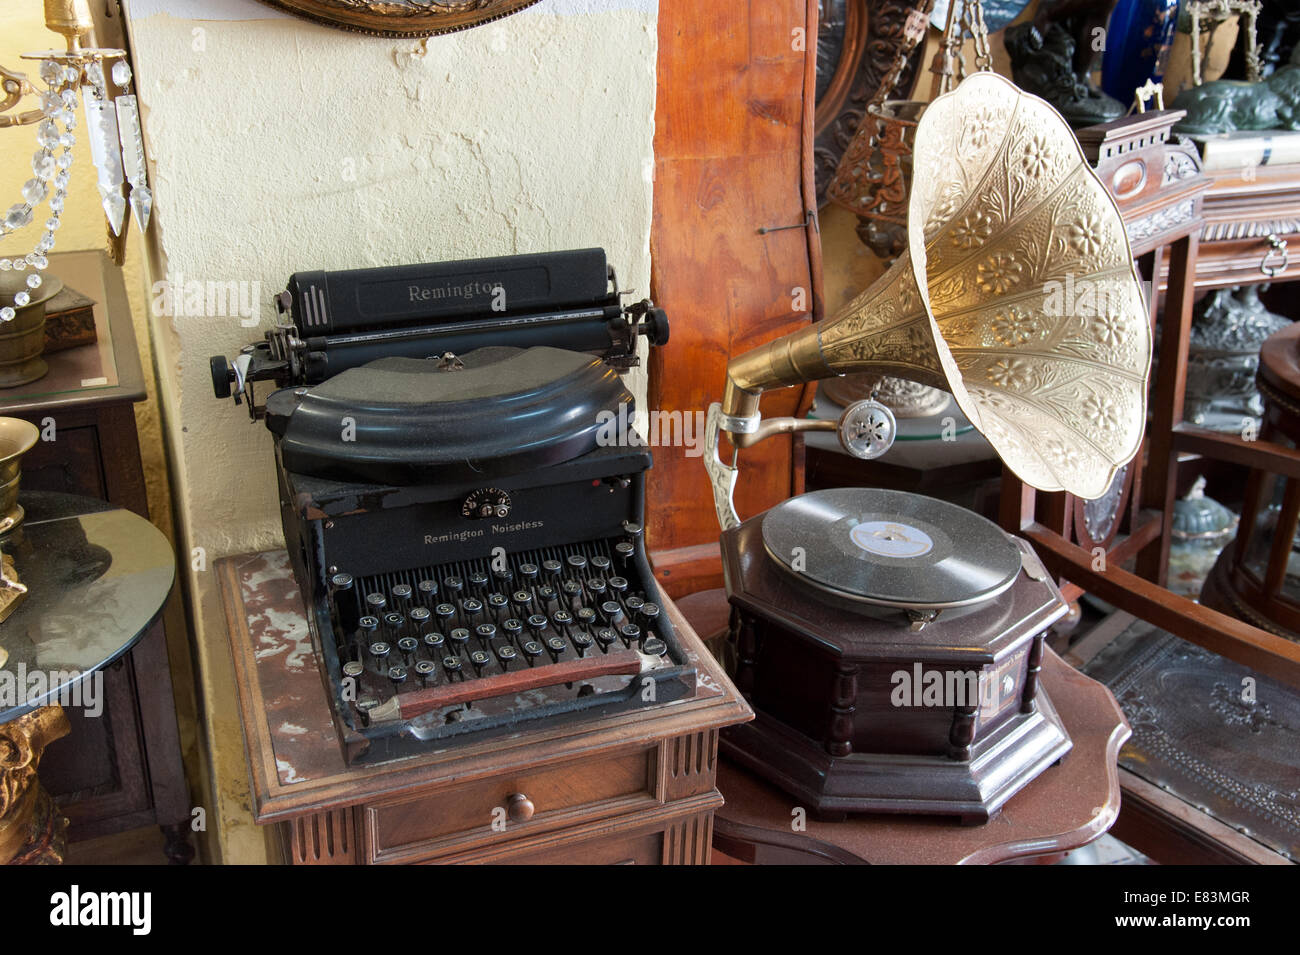 Alte Remington-Schreibmaschine und sein Master's Voice Grammophon-Spieler in einem Antiquitätenladen in Spanien Stockfoto